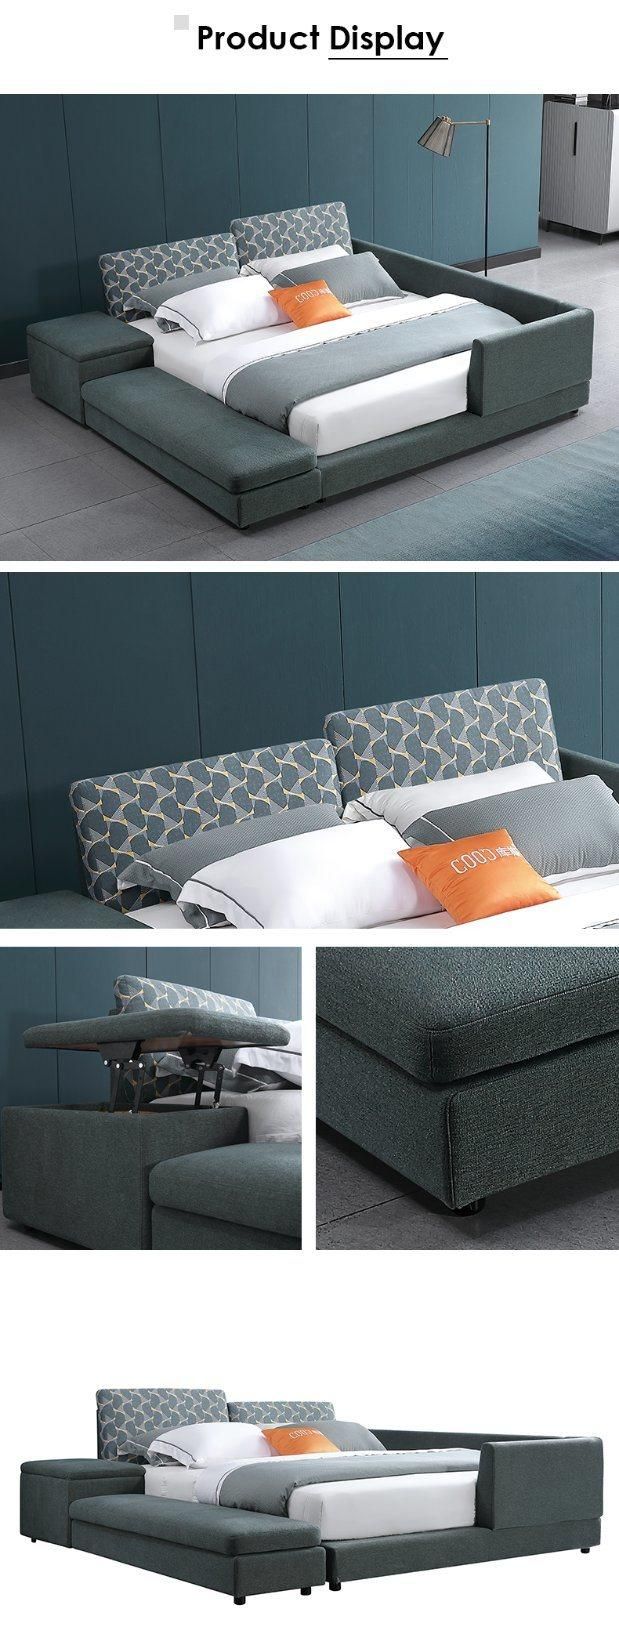 Designer Bedroom Furniture King Size Bed with Storage Cabinet